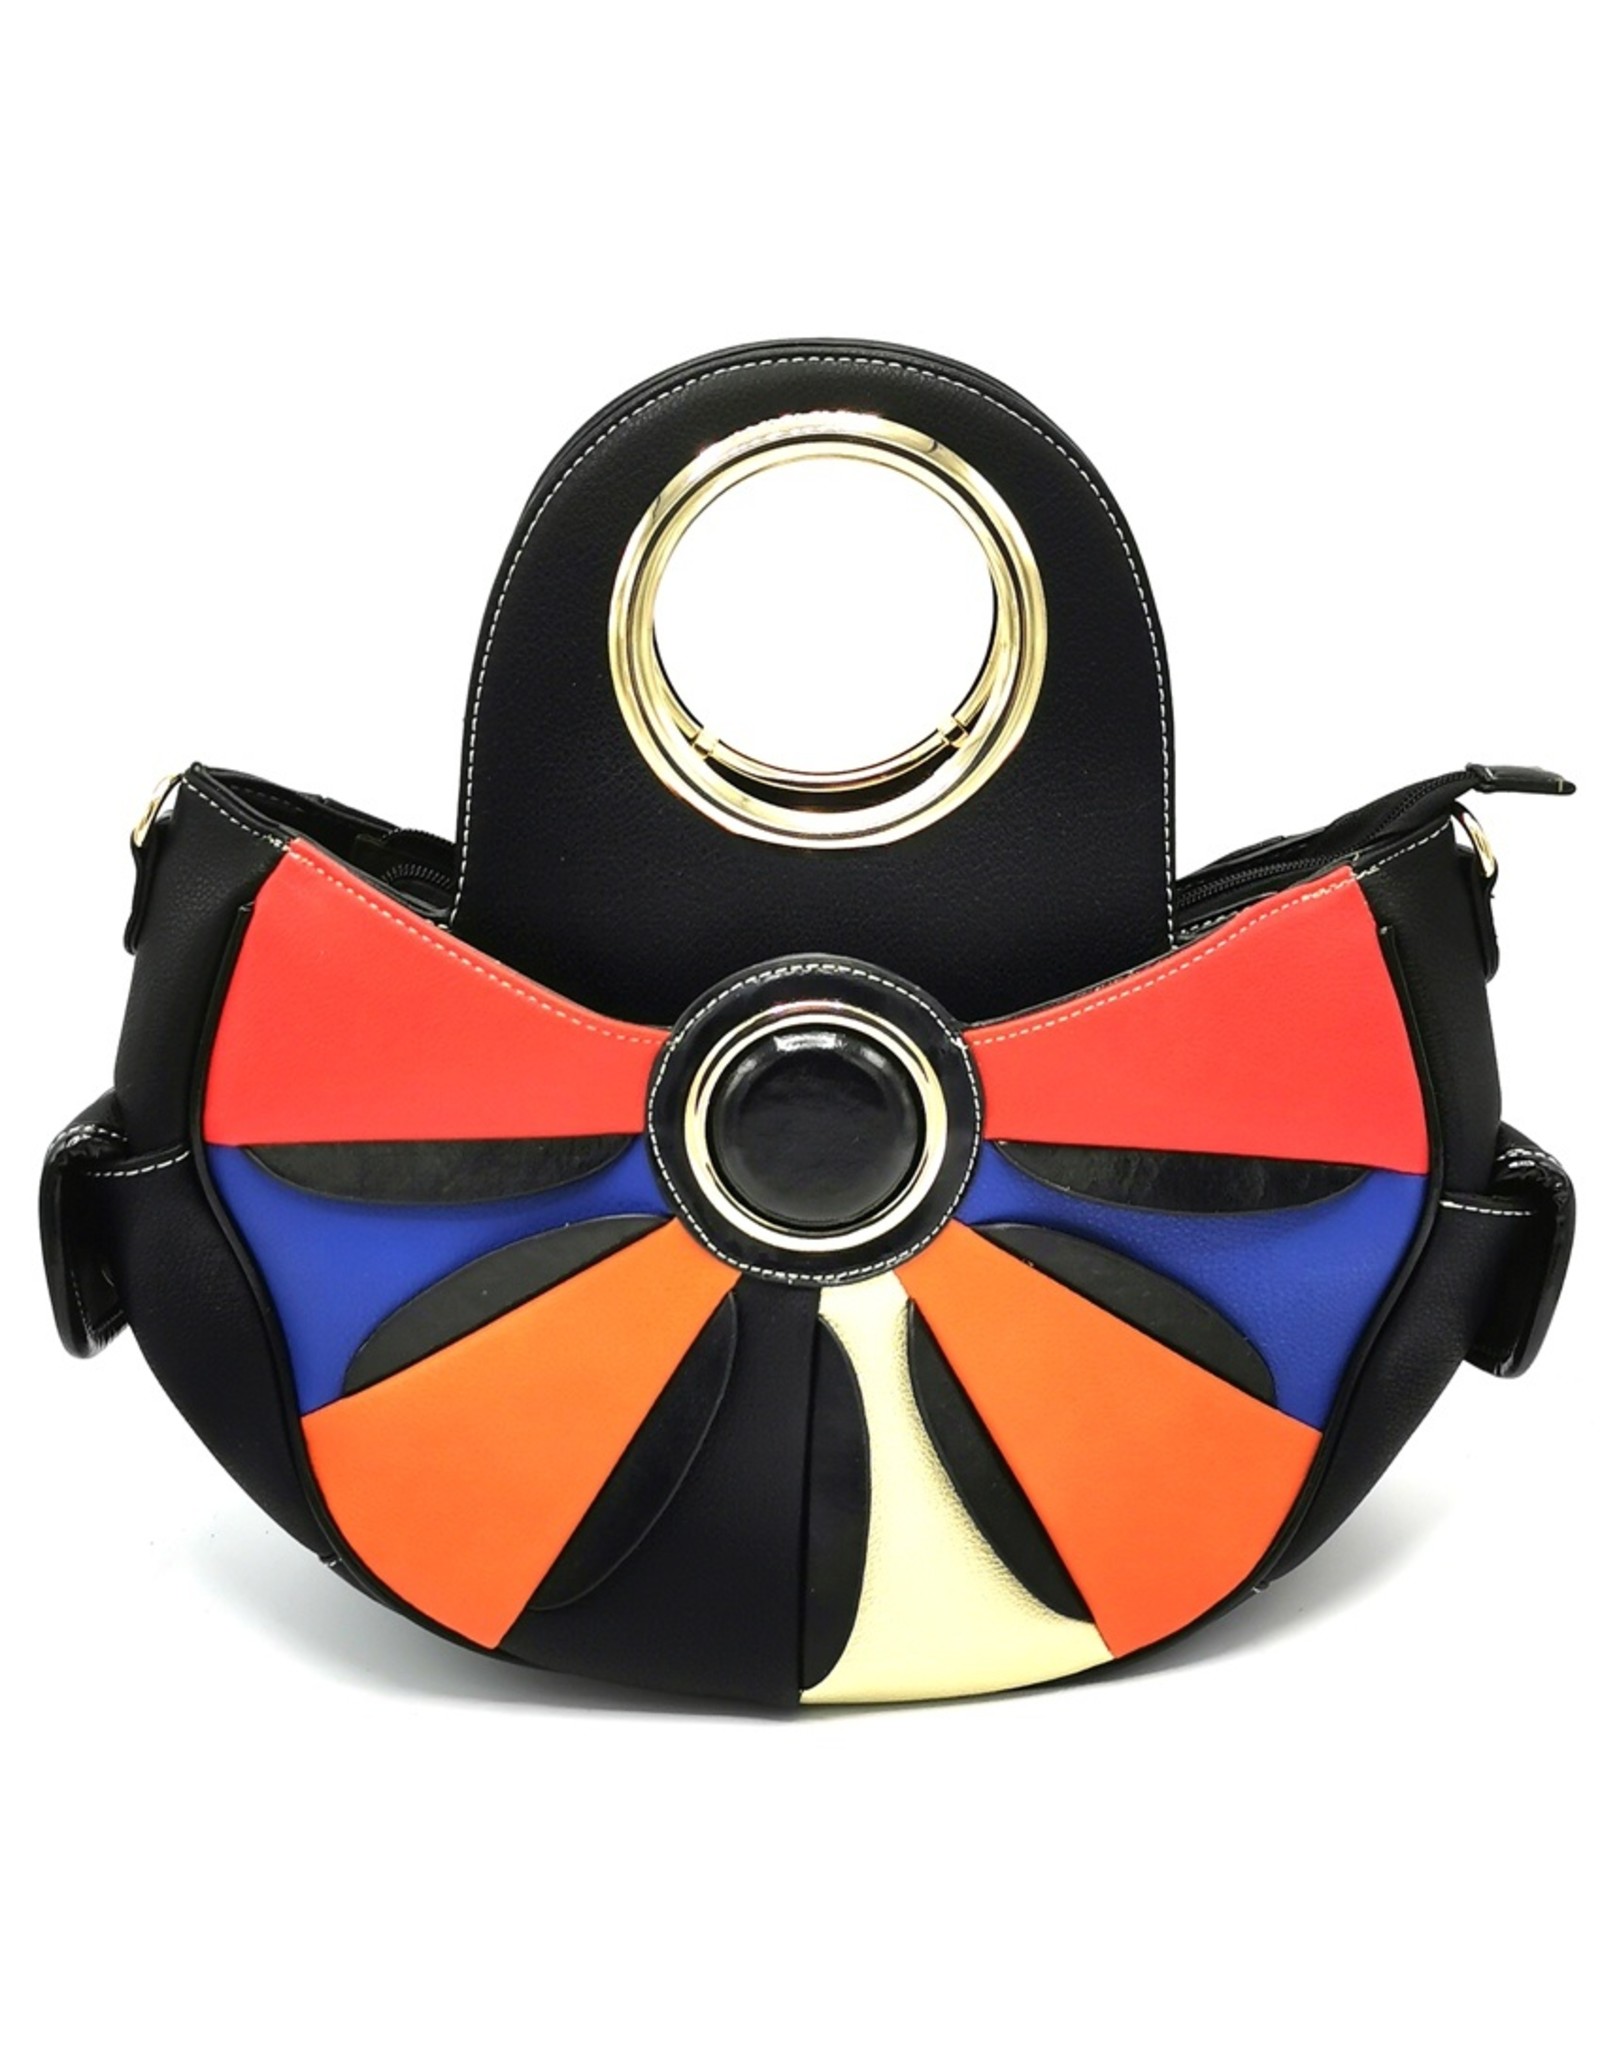 Angelo Fashion Handbags and Shoulderbags -  Flower Power Handbag Flower black